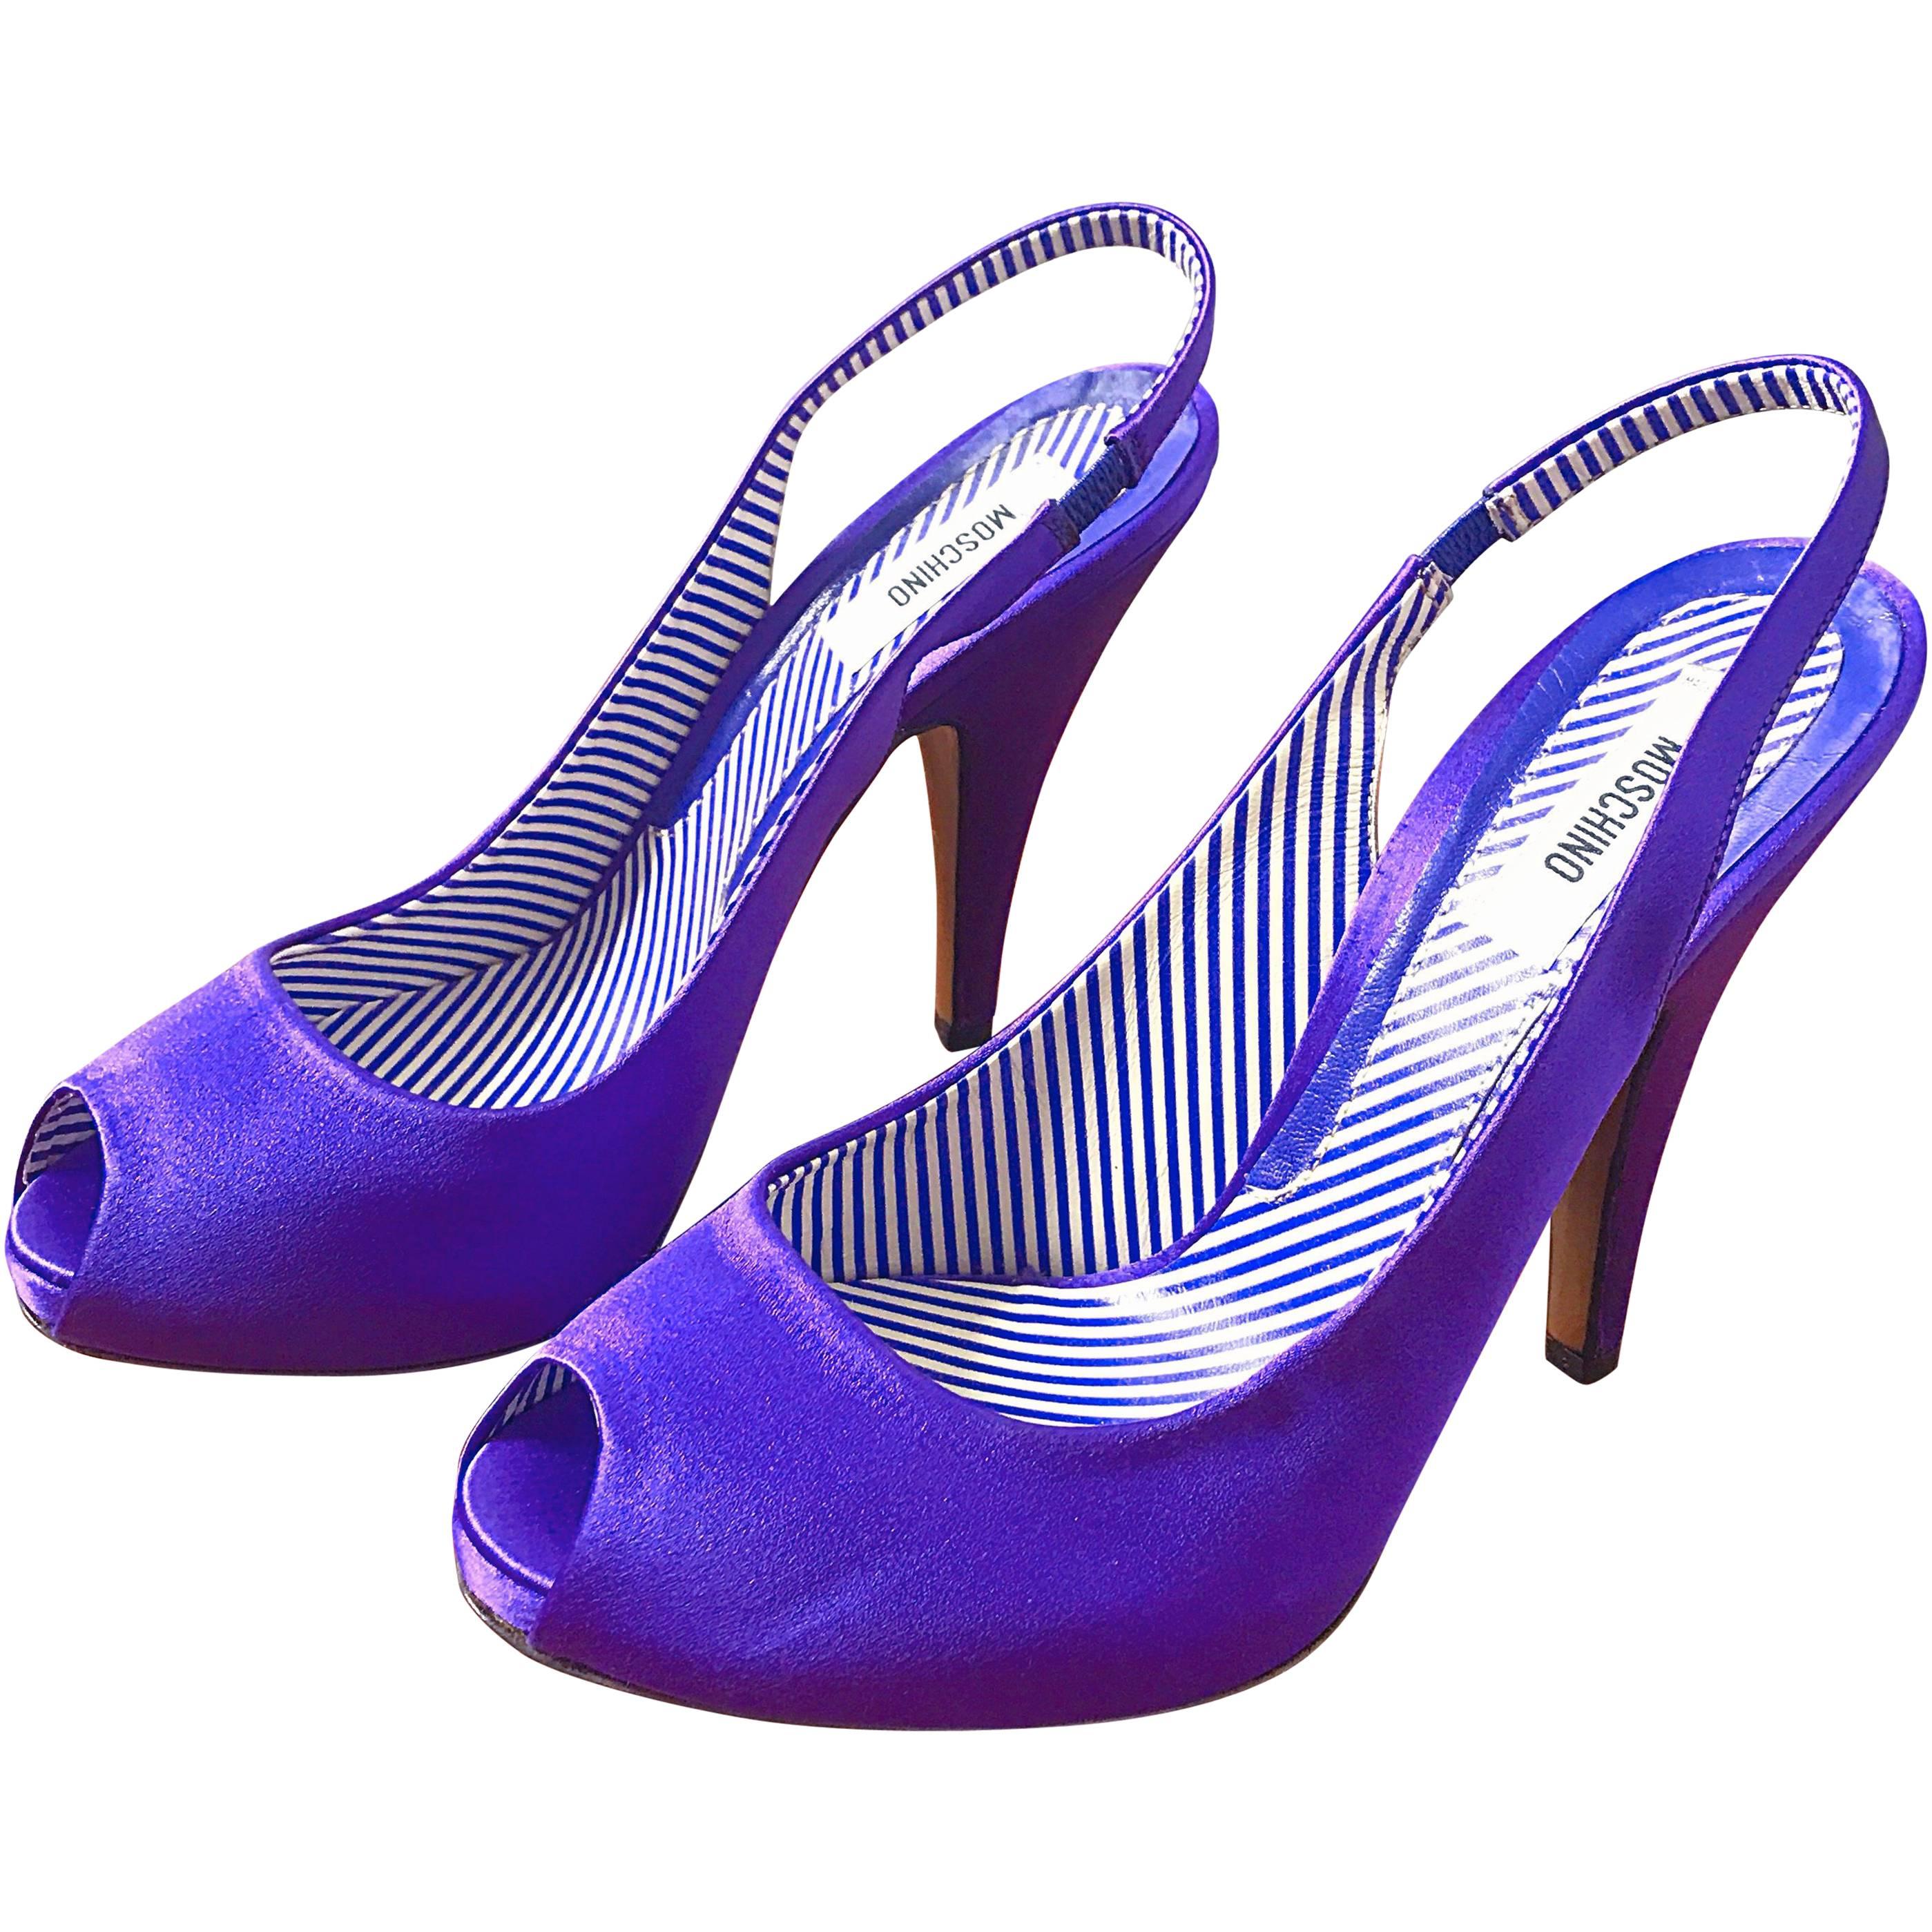 Moschino - Chaussures à talons à bout ouvert en soie violette avec pierres précieuses, taille 9 / 39, état neuf dans leur boîte